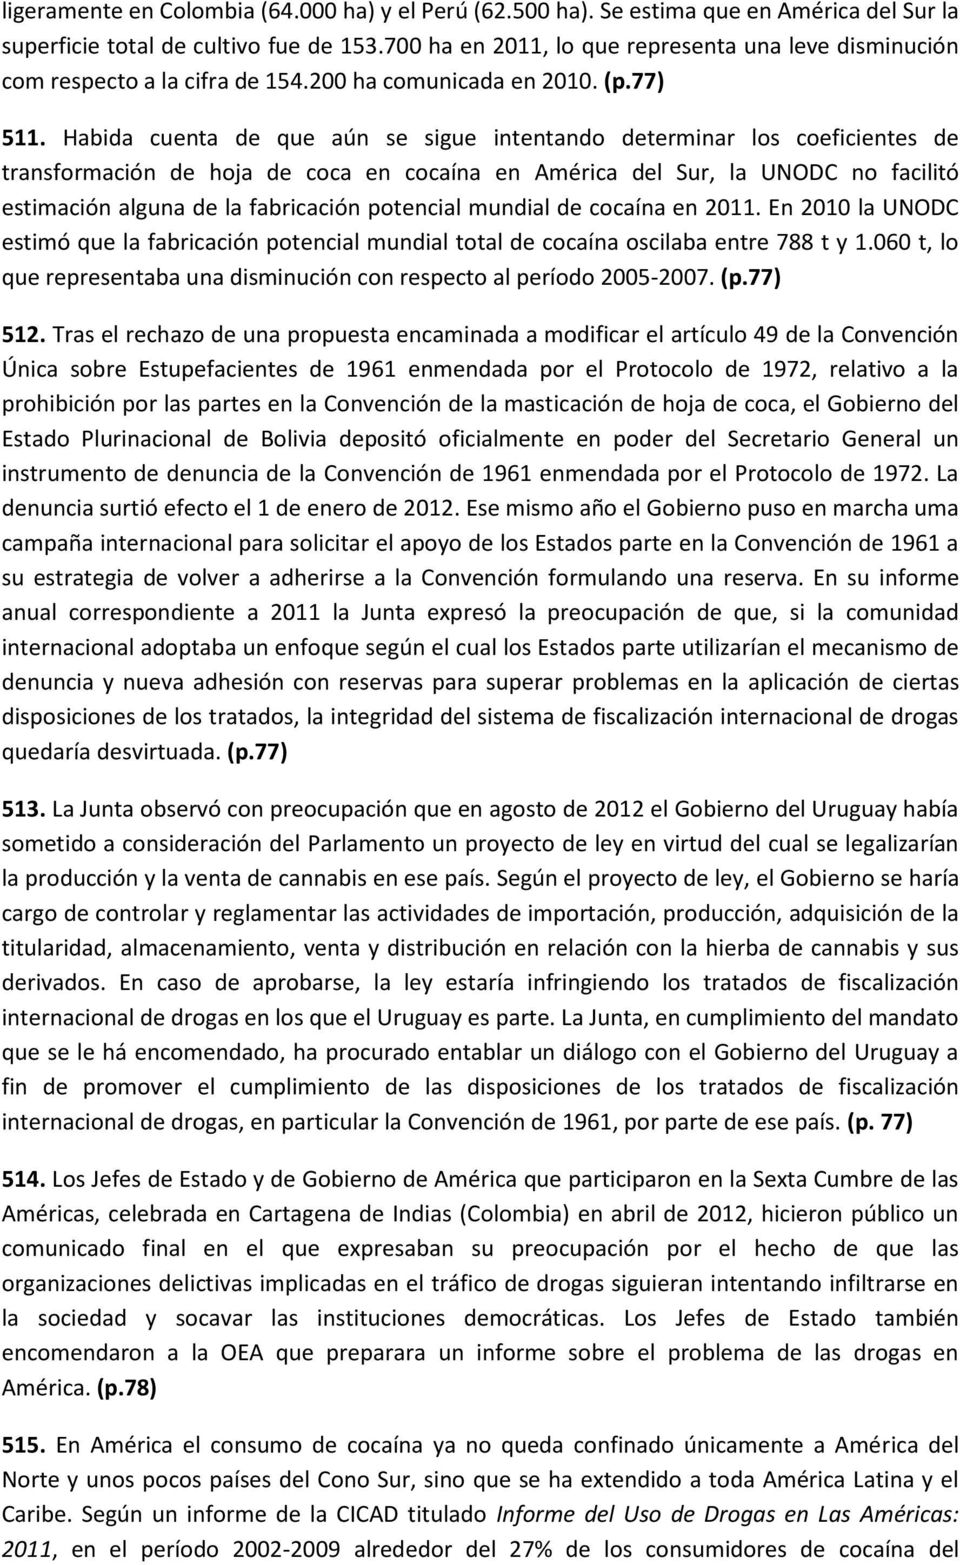 Habida cuenta de que aún se sigue intentando determinar los coeficientes de transformación de hoja de coca en cocaína en América del Sur, la UNODC no facilitó estimación alguna de la fabricación